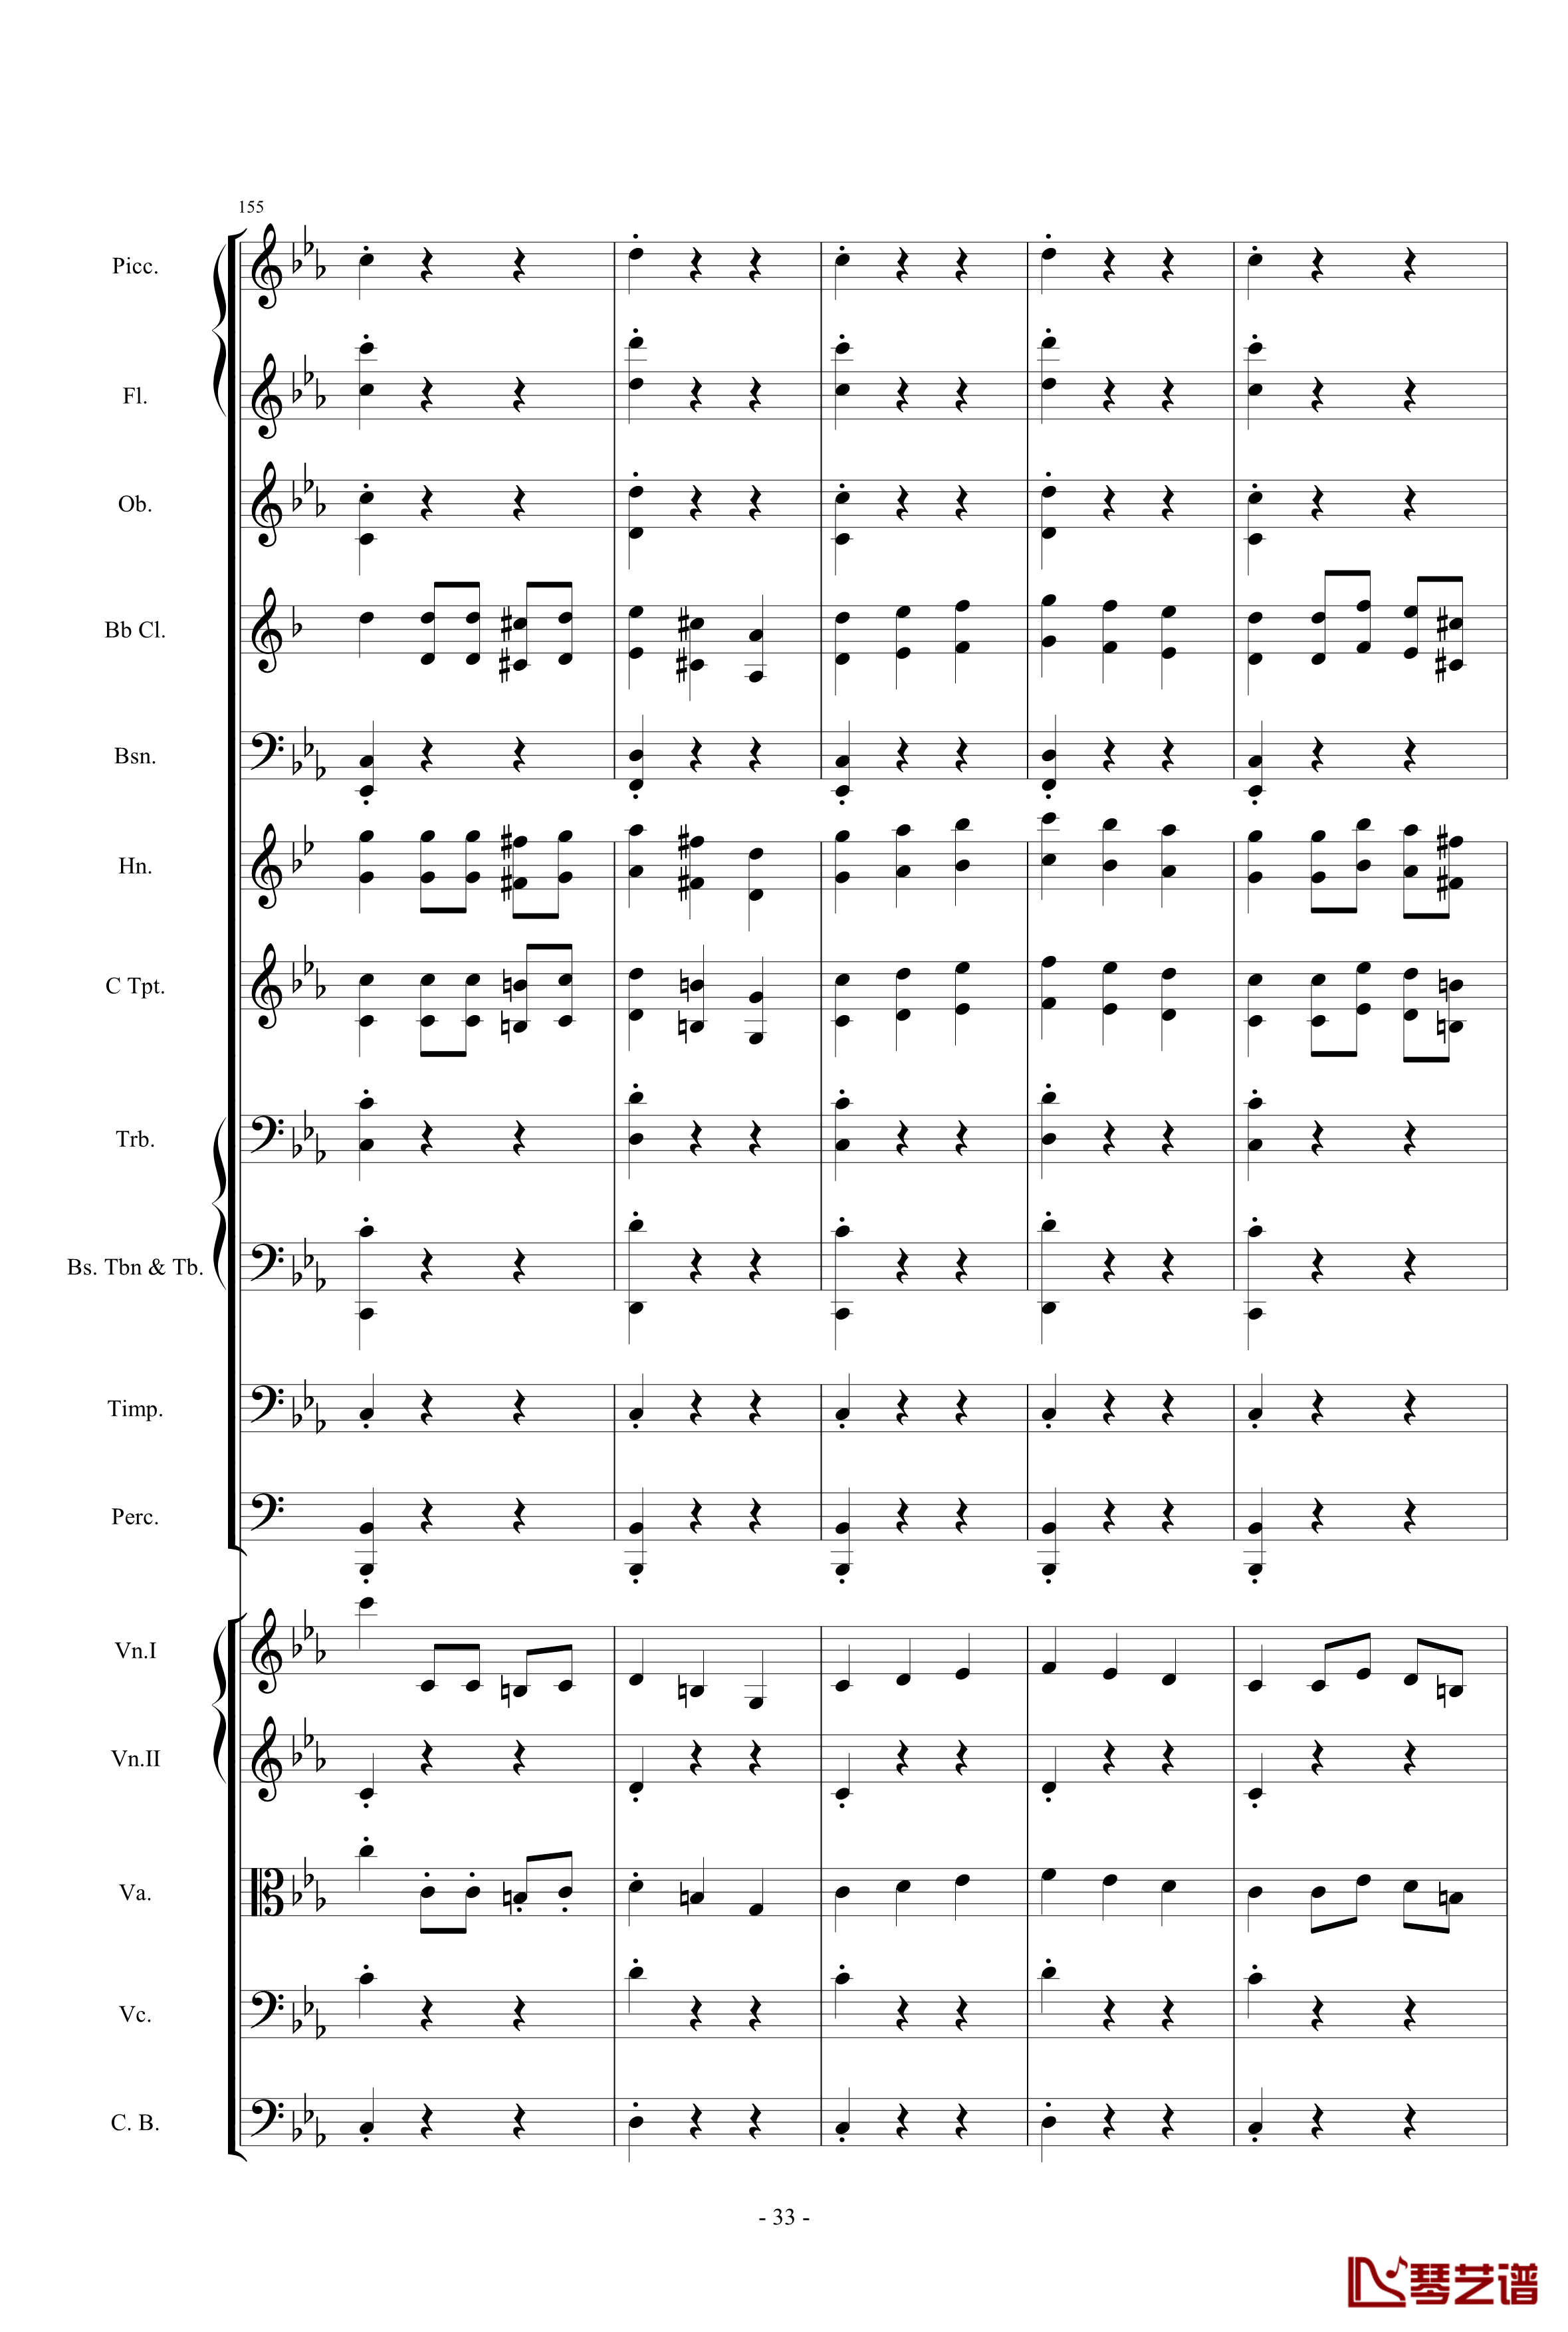 愤怒的小鸟交响曲第三乐章Op.5 no.3钢琴谱-1057257833